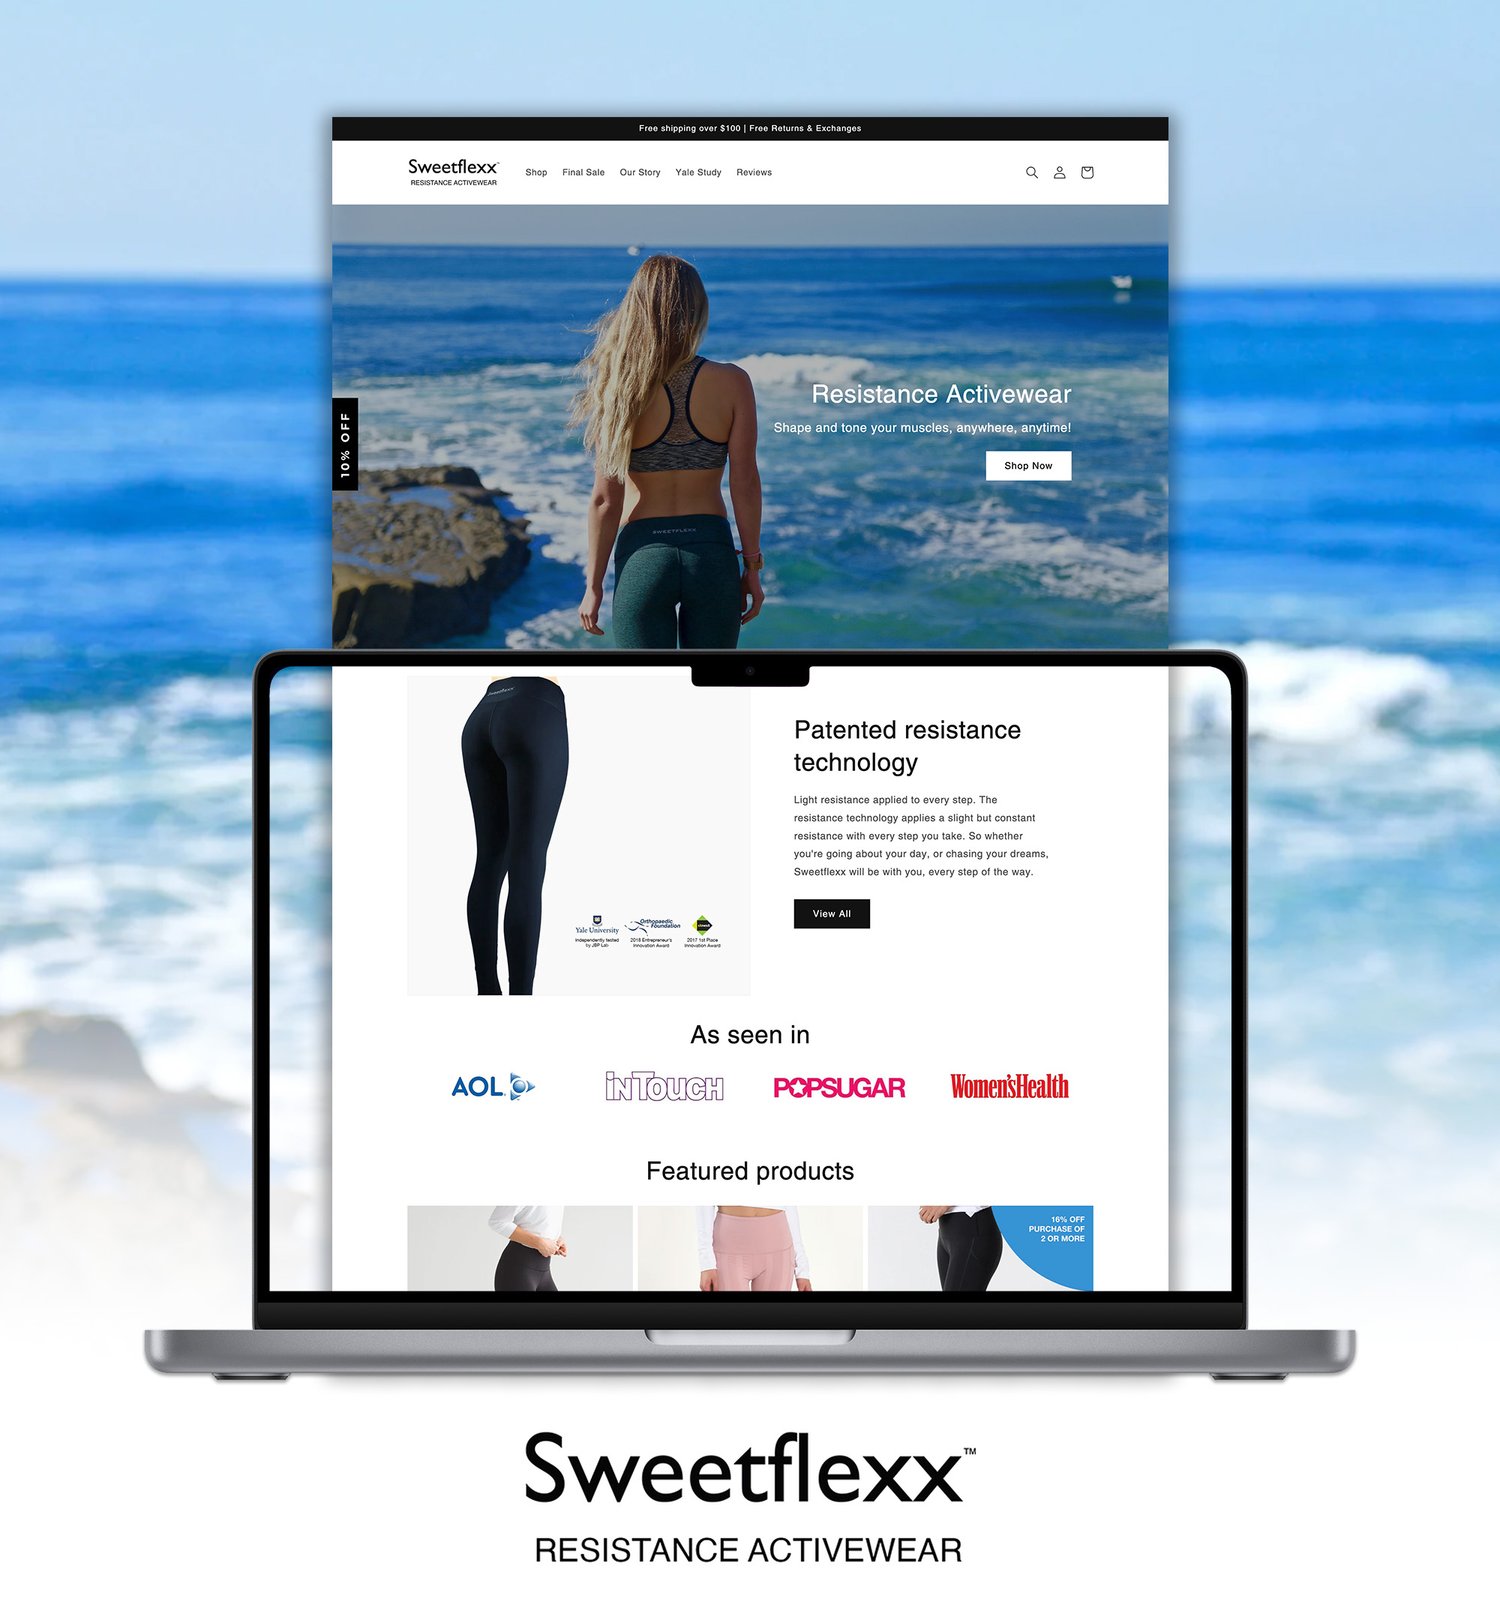 Sweetflexx Blog